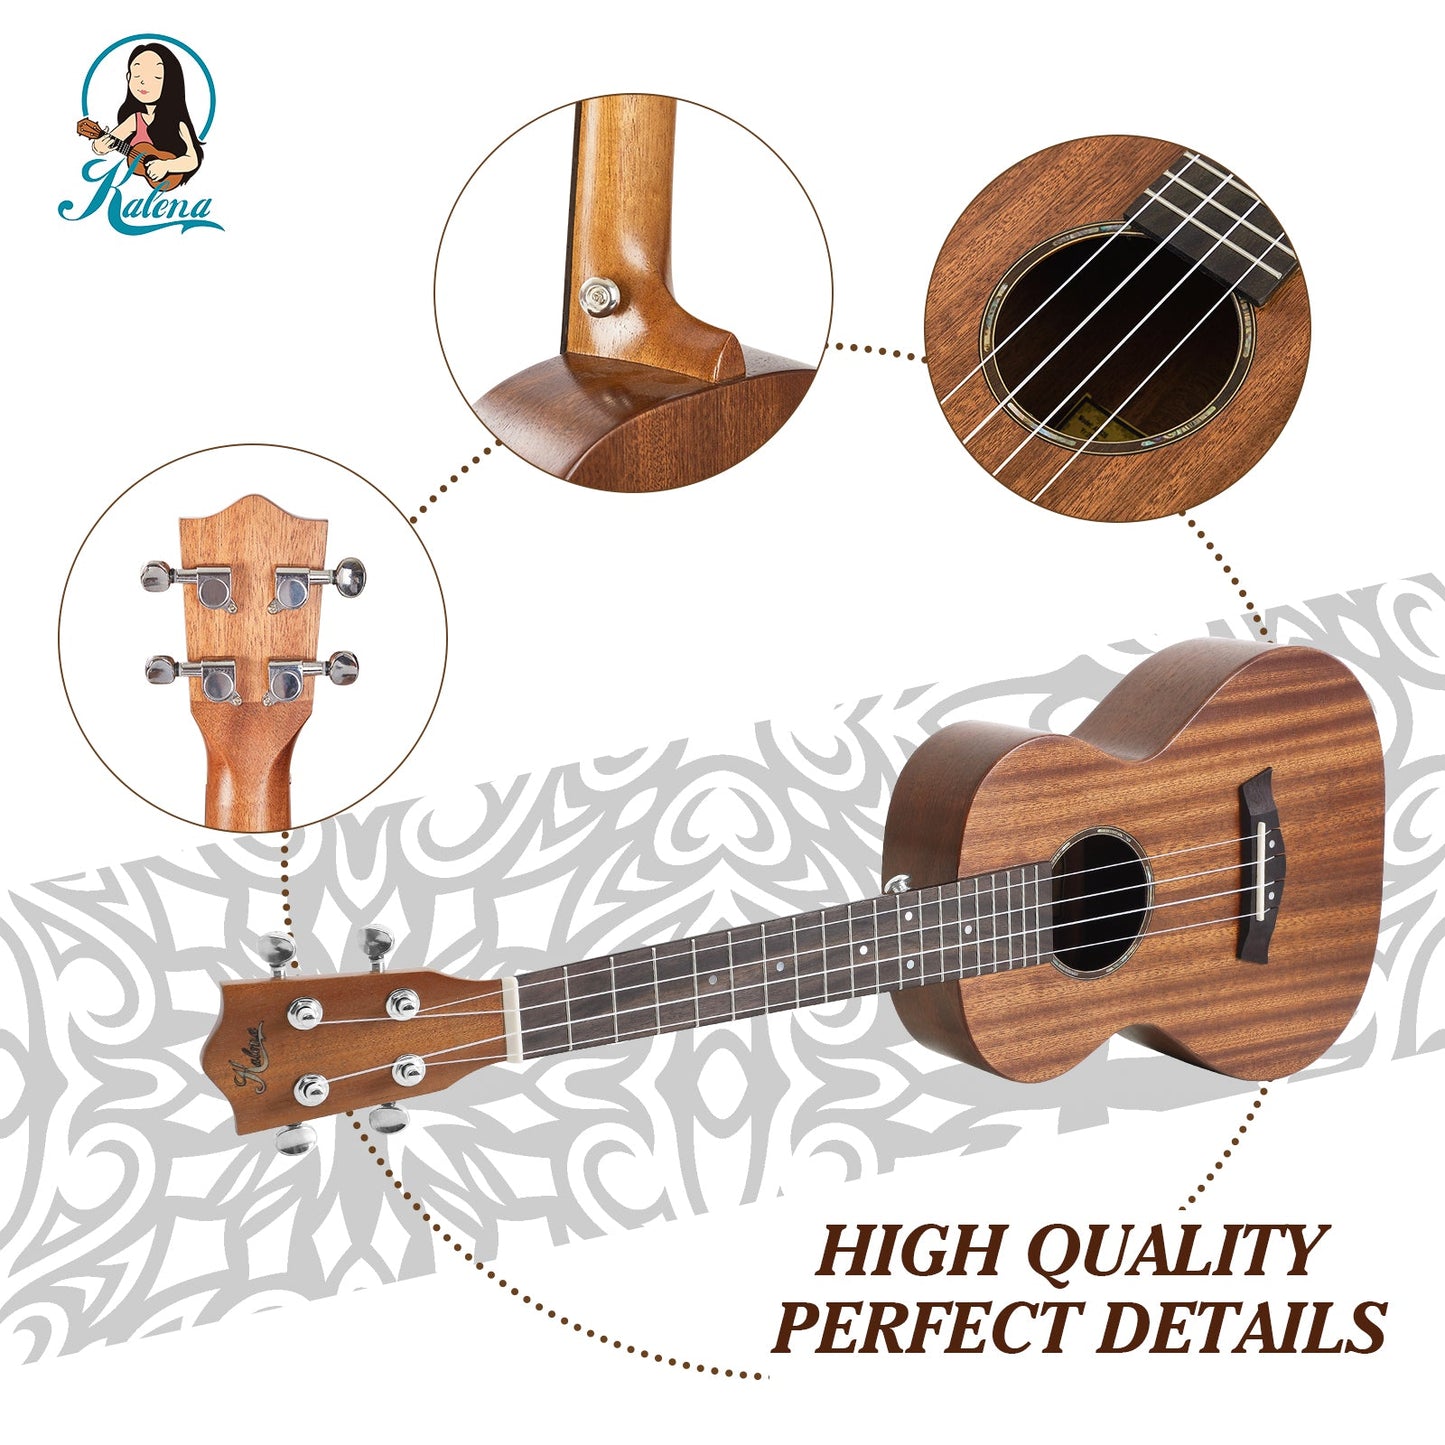 Kalena All Solid Sapele Concert Ukulele with extra wide fretboard Complete Set: Strings, Picks, Strap, Digital Tuner, Padded Case, Starter Guide